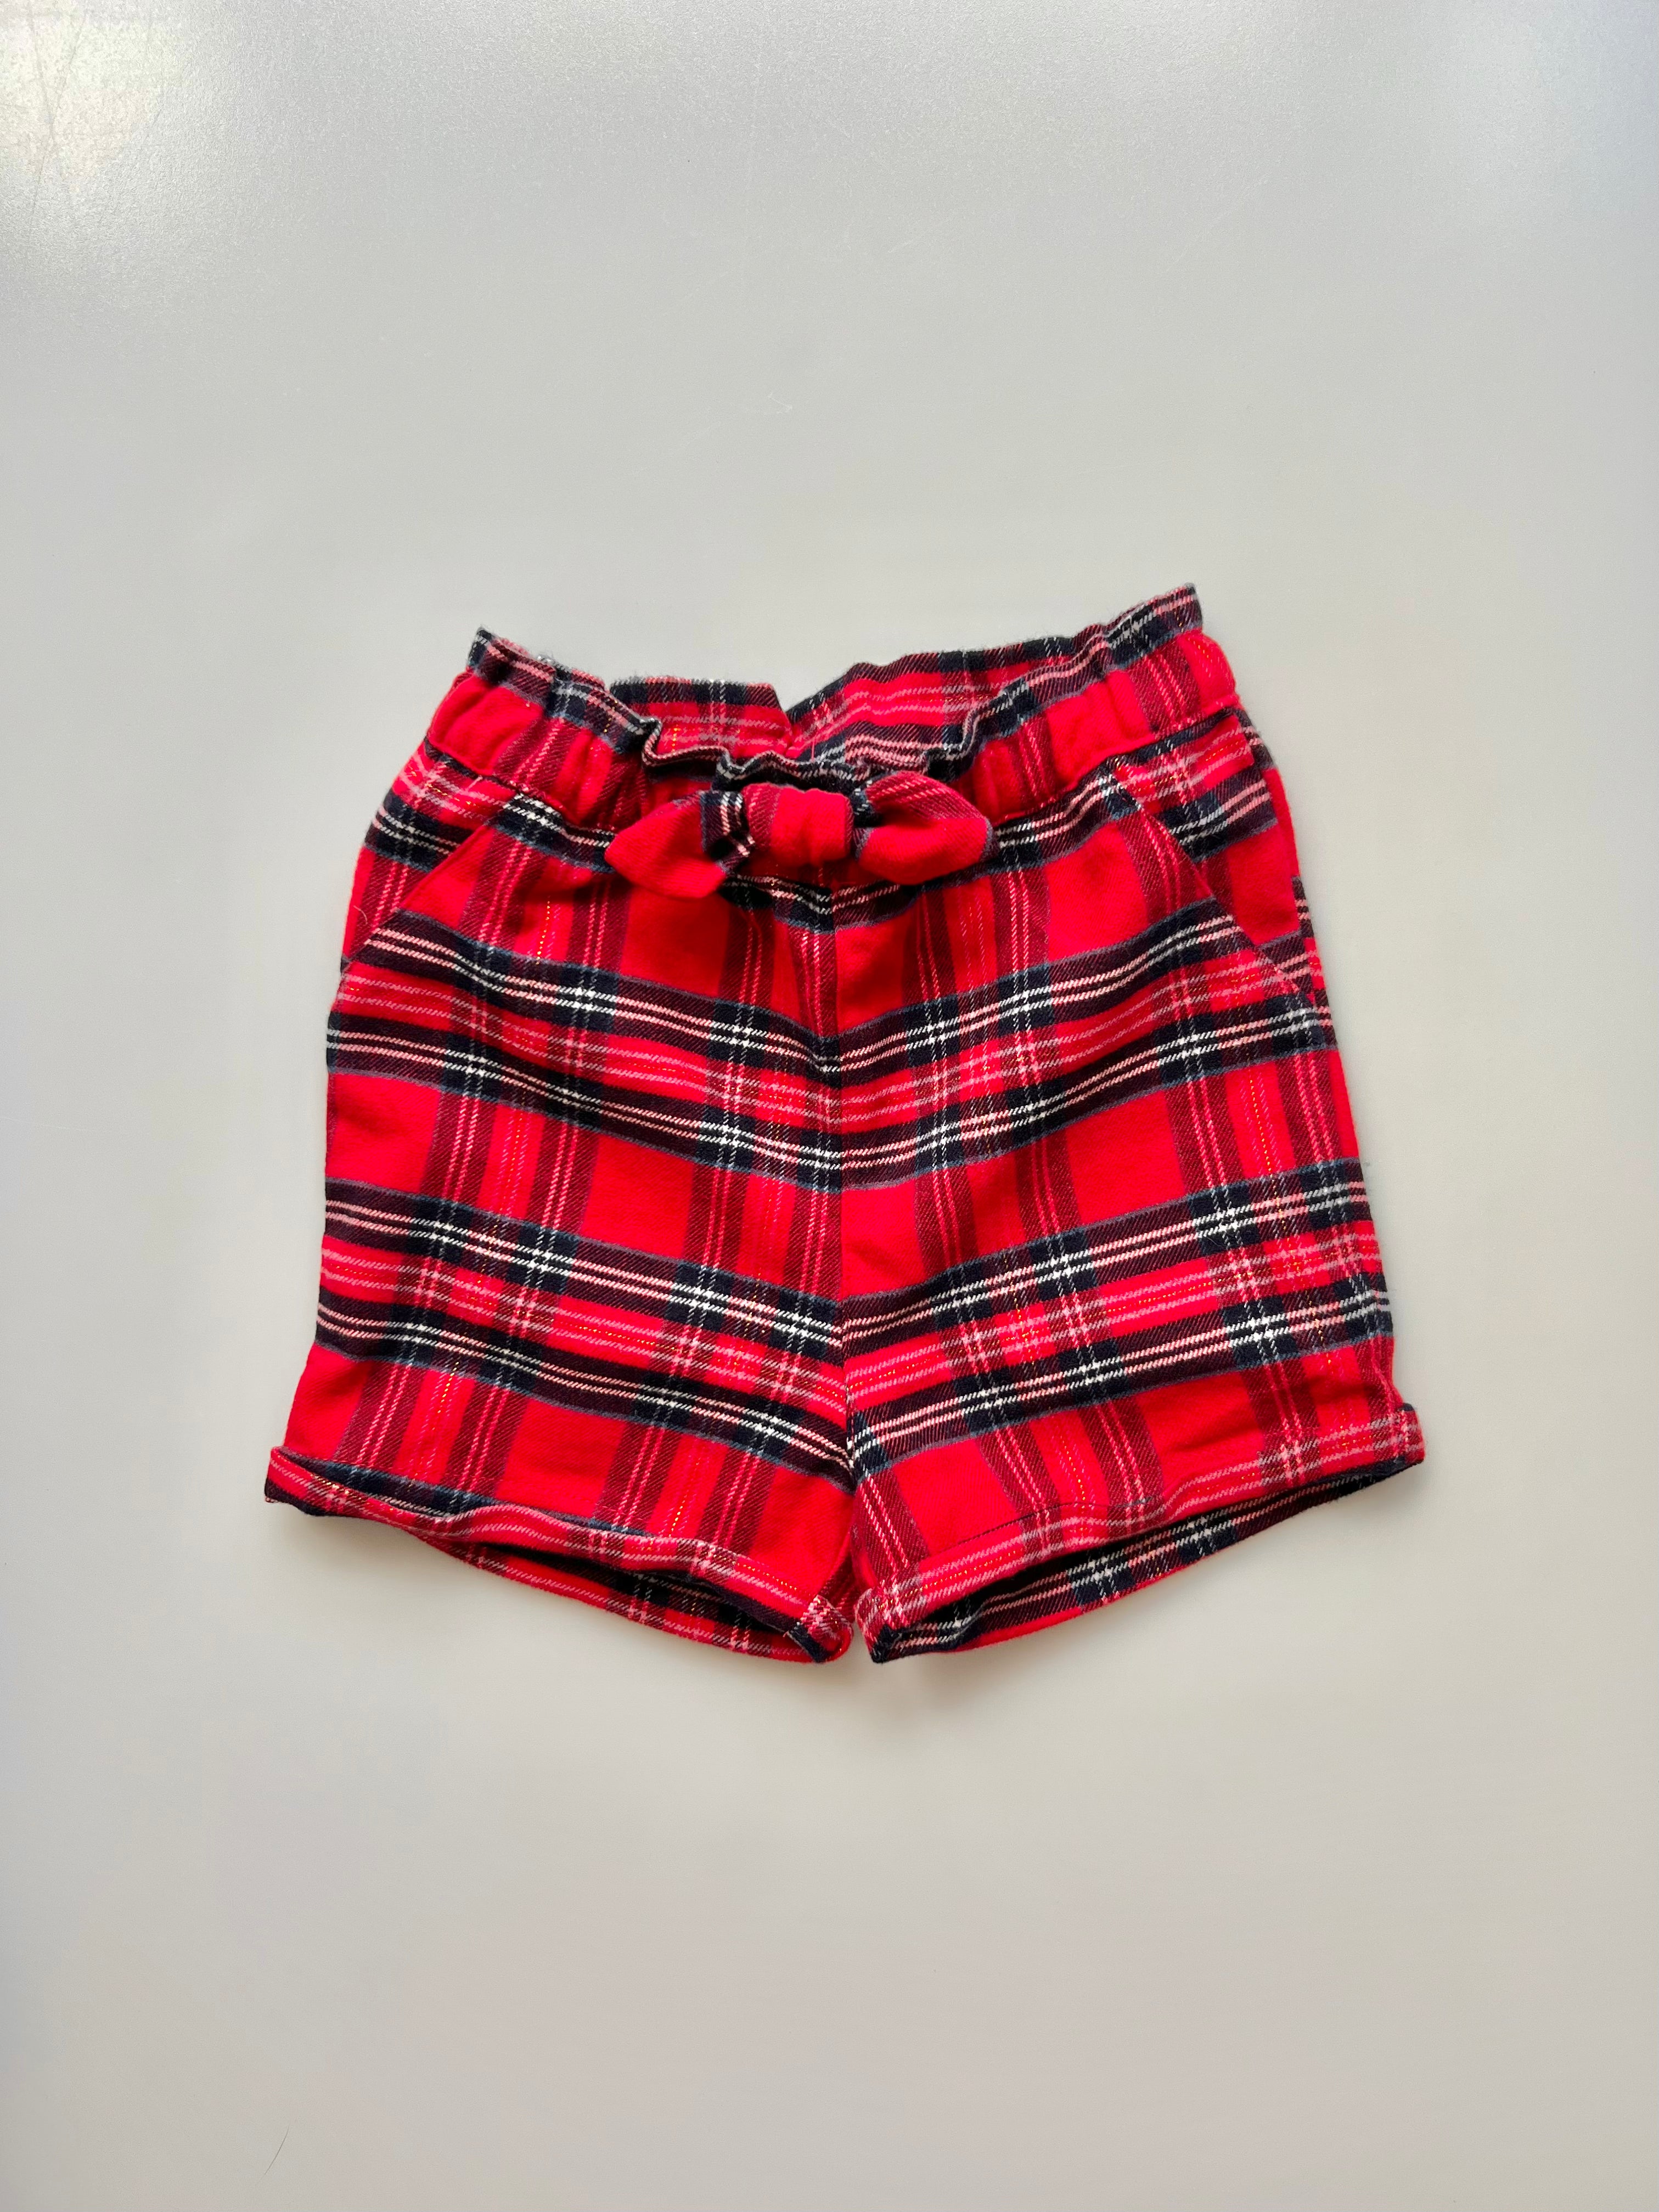 H&M Tartan Shorts 12-18 Months